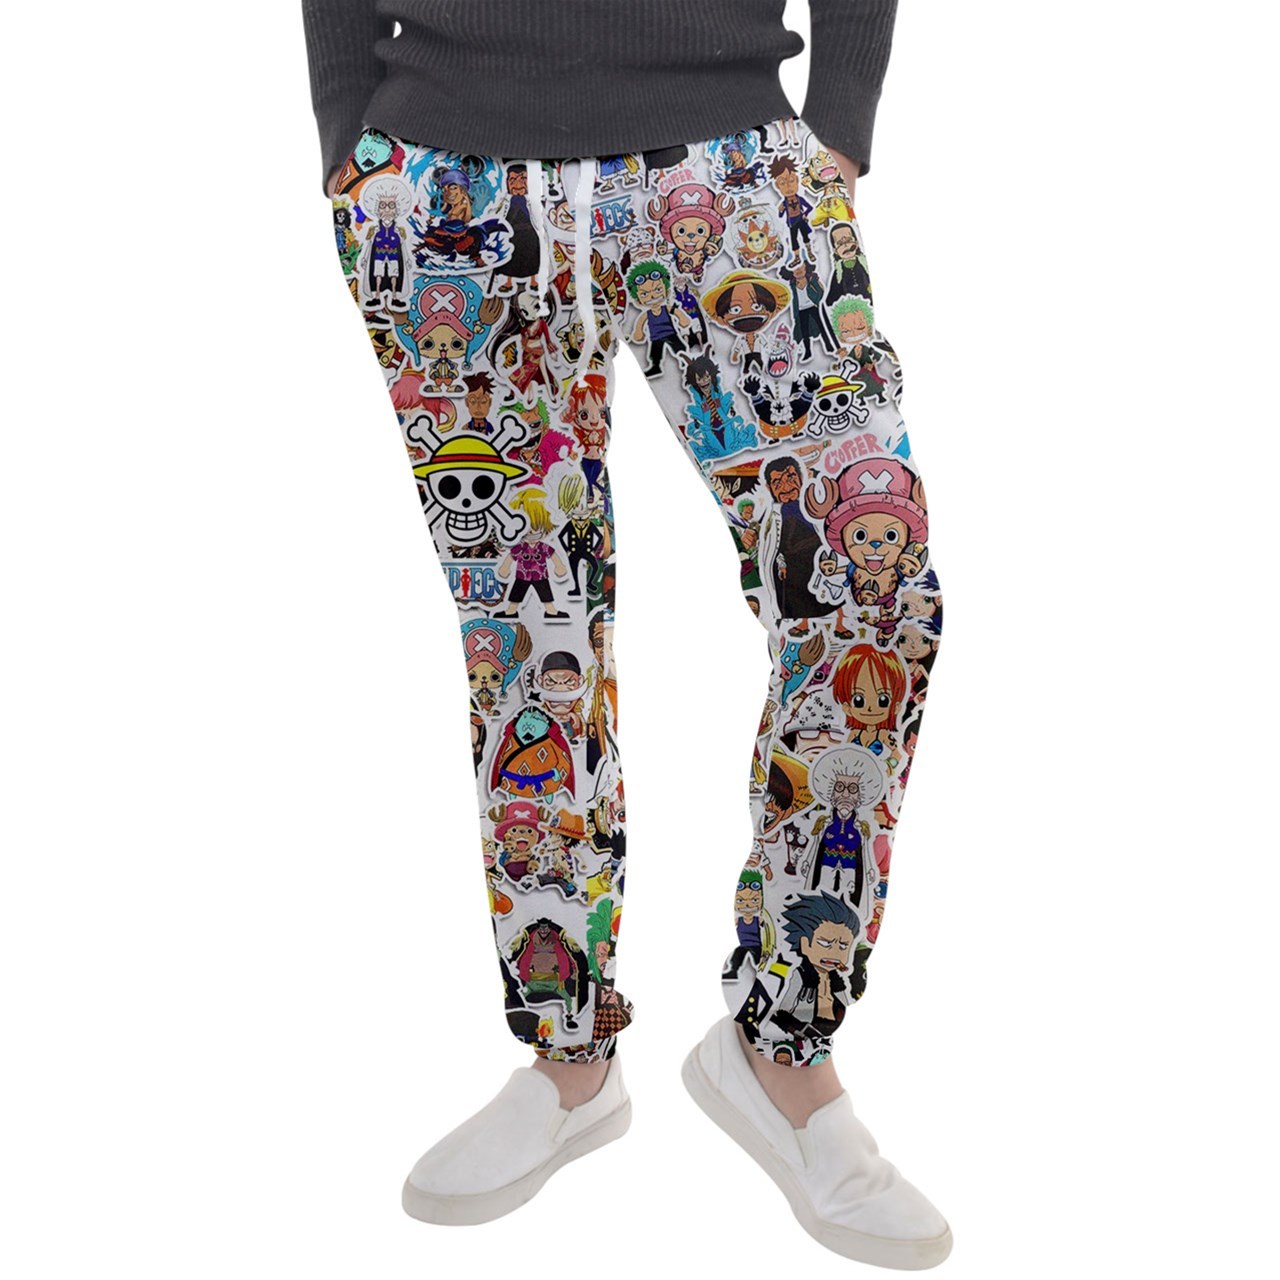 One Piece Anime Pajama Pants : Man One Piece Pants Blue White Slim